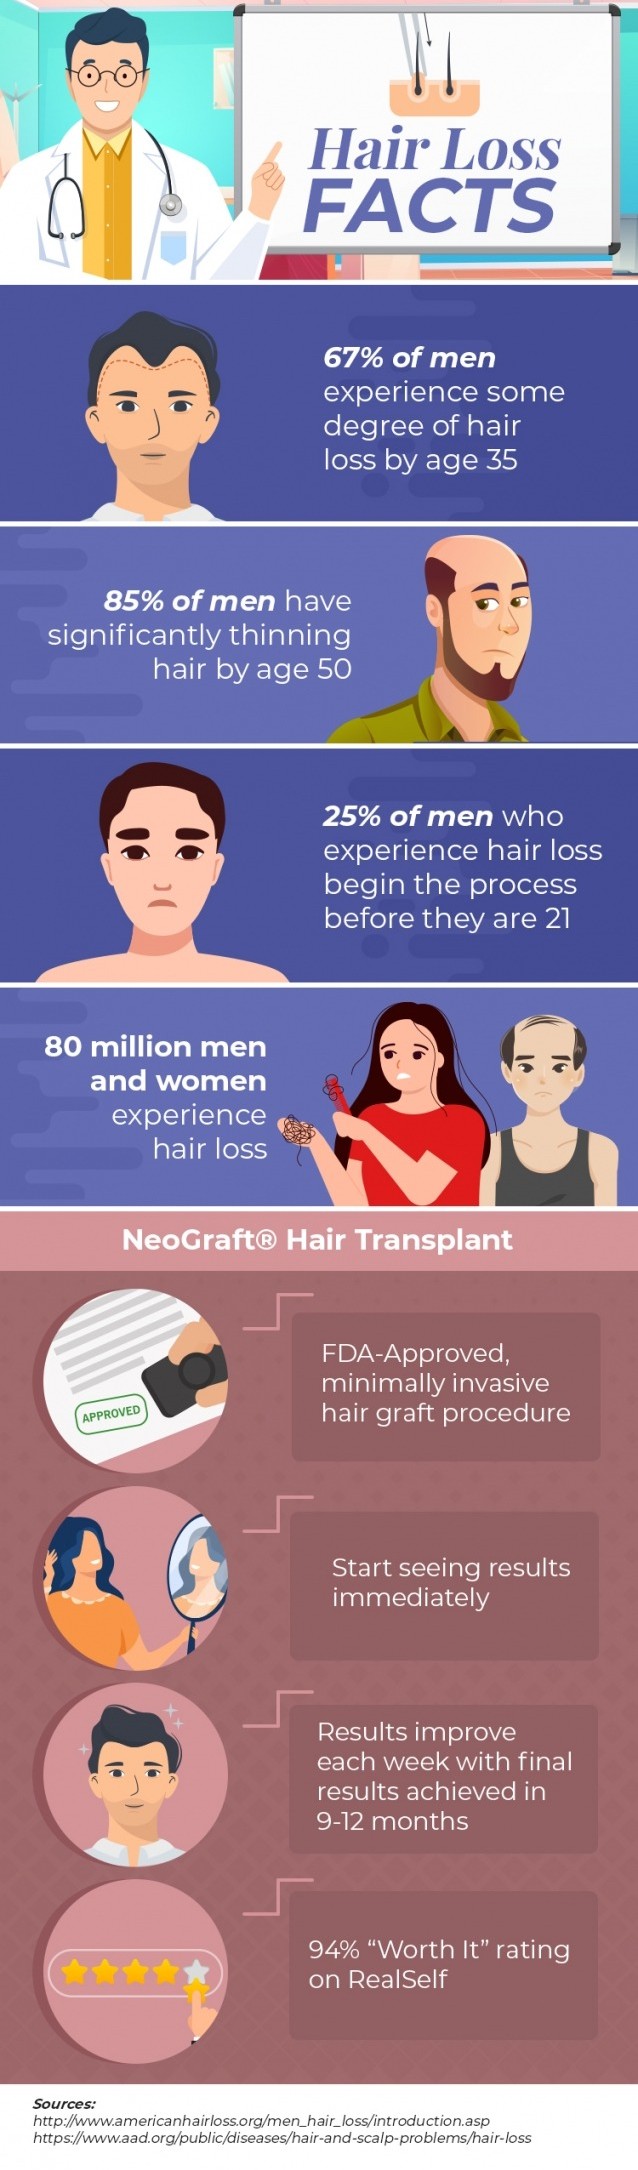 Hair Loss Facts